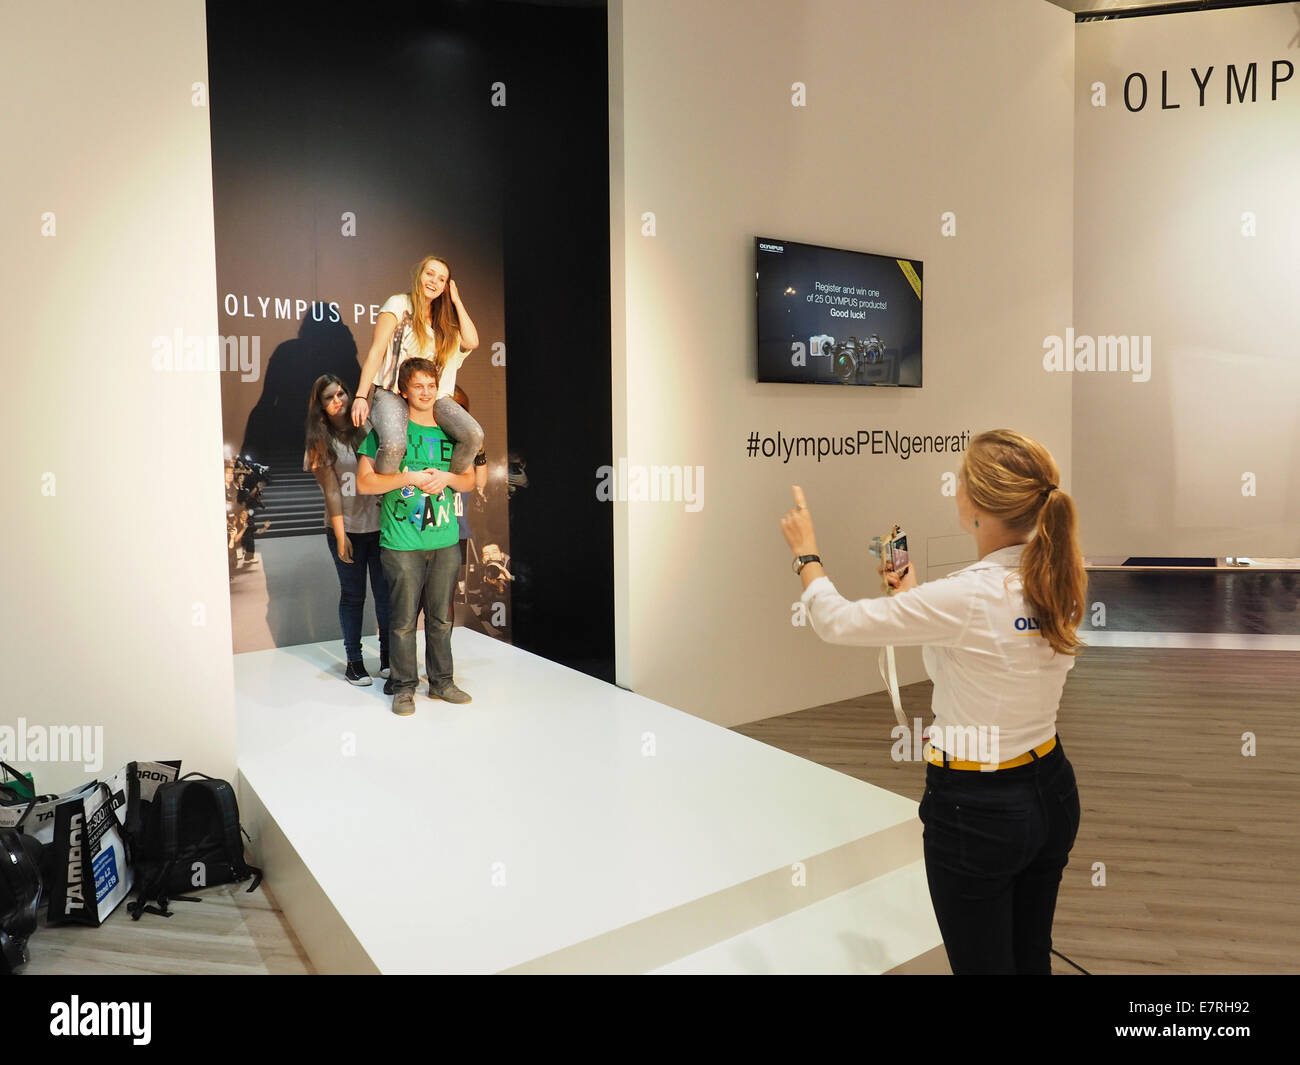 Photokina 2014 Femme photographe de prendre photo de jeunes visiteurs avec un Olympus Pen mirrorless Camera system. Banque D'Images